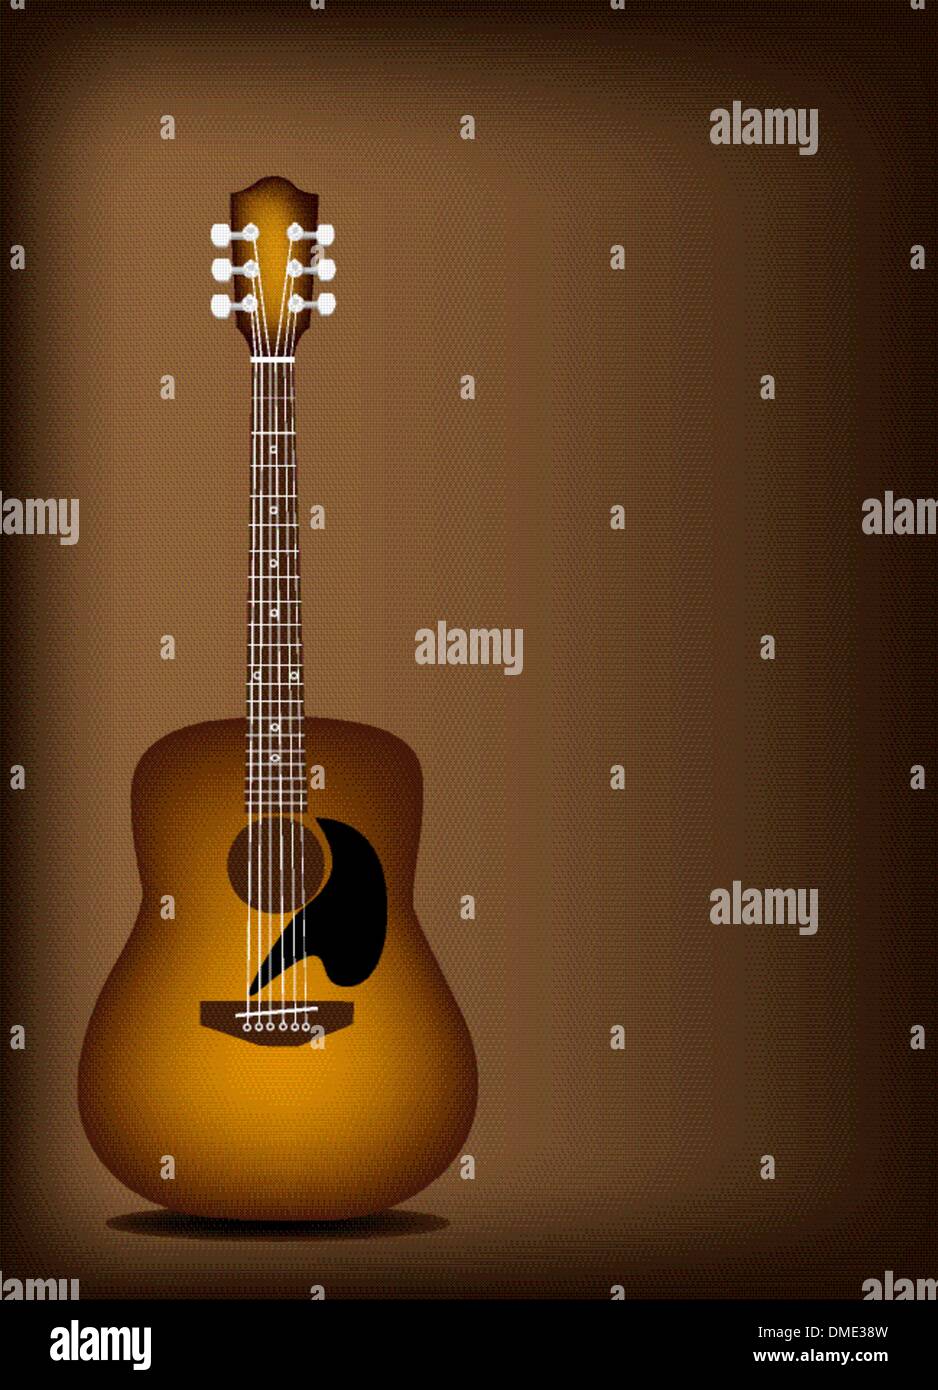 Bella chitarra acustica su scuro dello sfondo marrone Immagine e Vettoriale  - Alamy